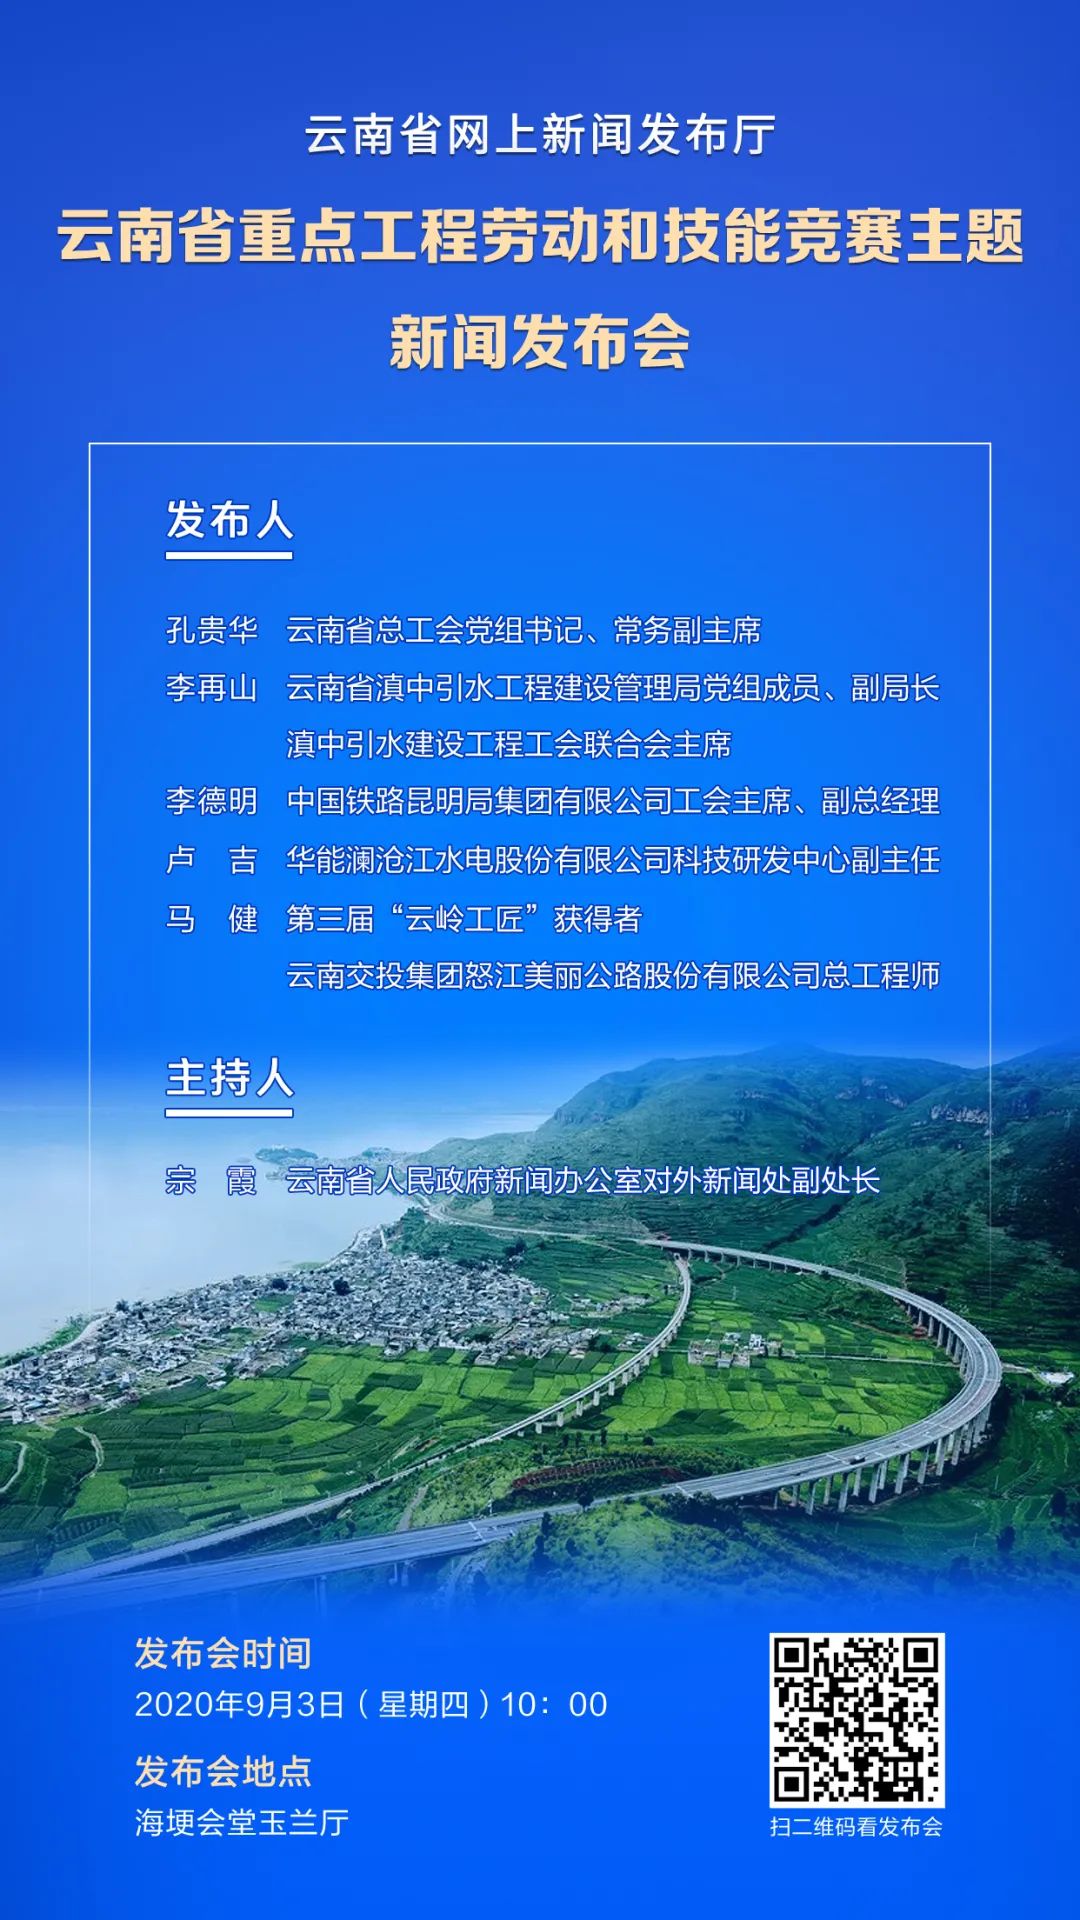 云南省重点工程劳动和技能竞赛主题新闻发布会将于9月3日召开